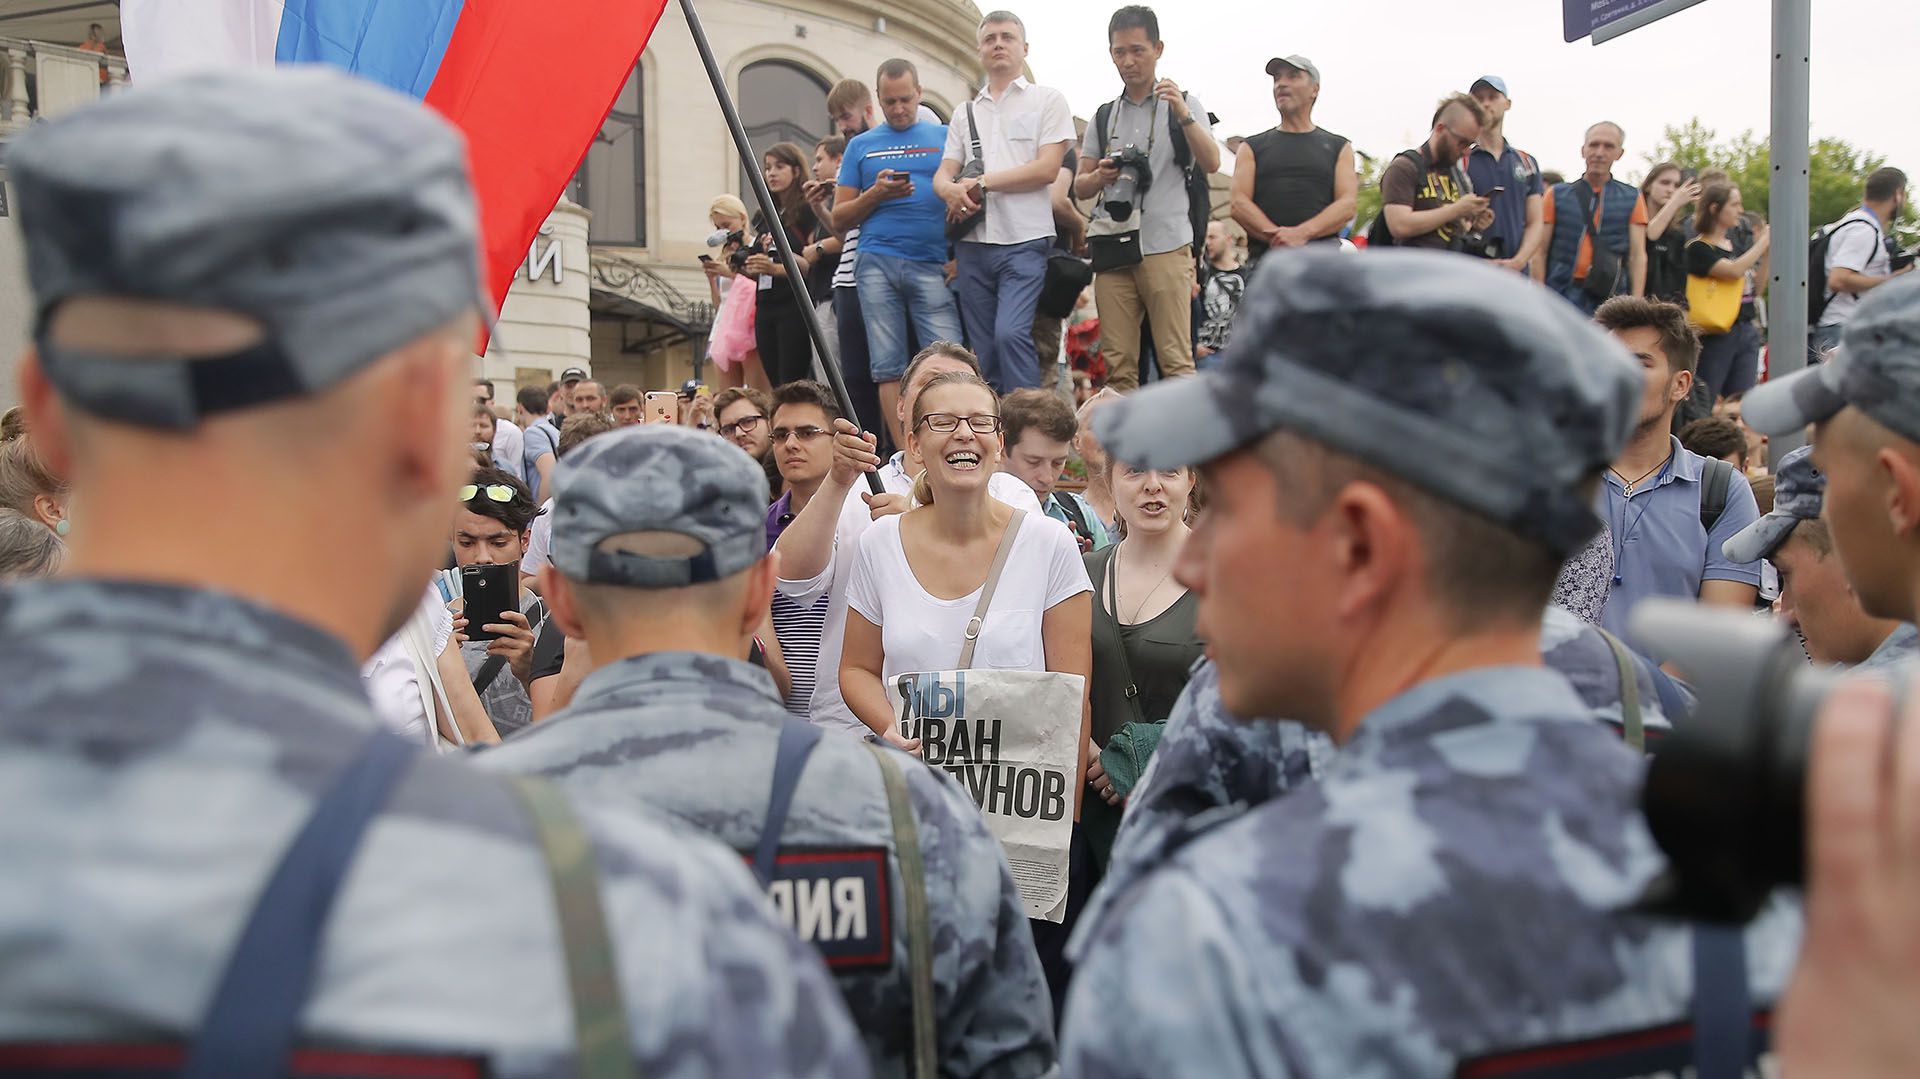 Las manifestaciones en Rusia requieren de aprobación estatal o son consideradas ilegales (Reuters)